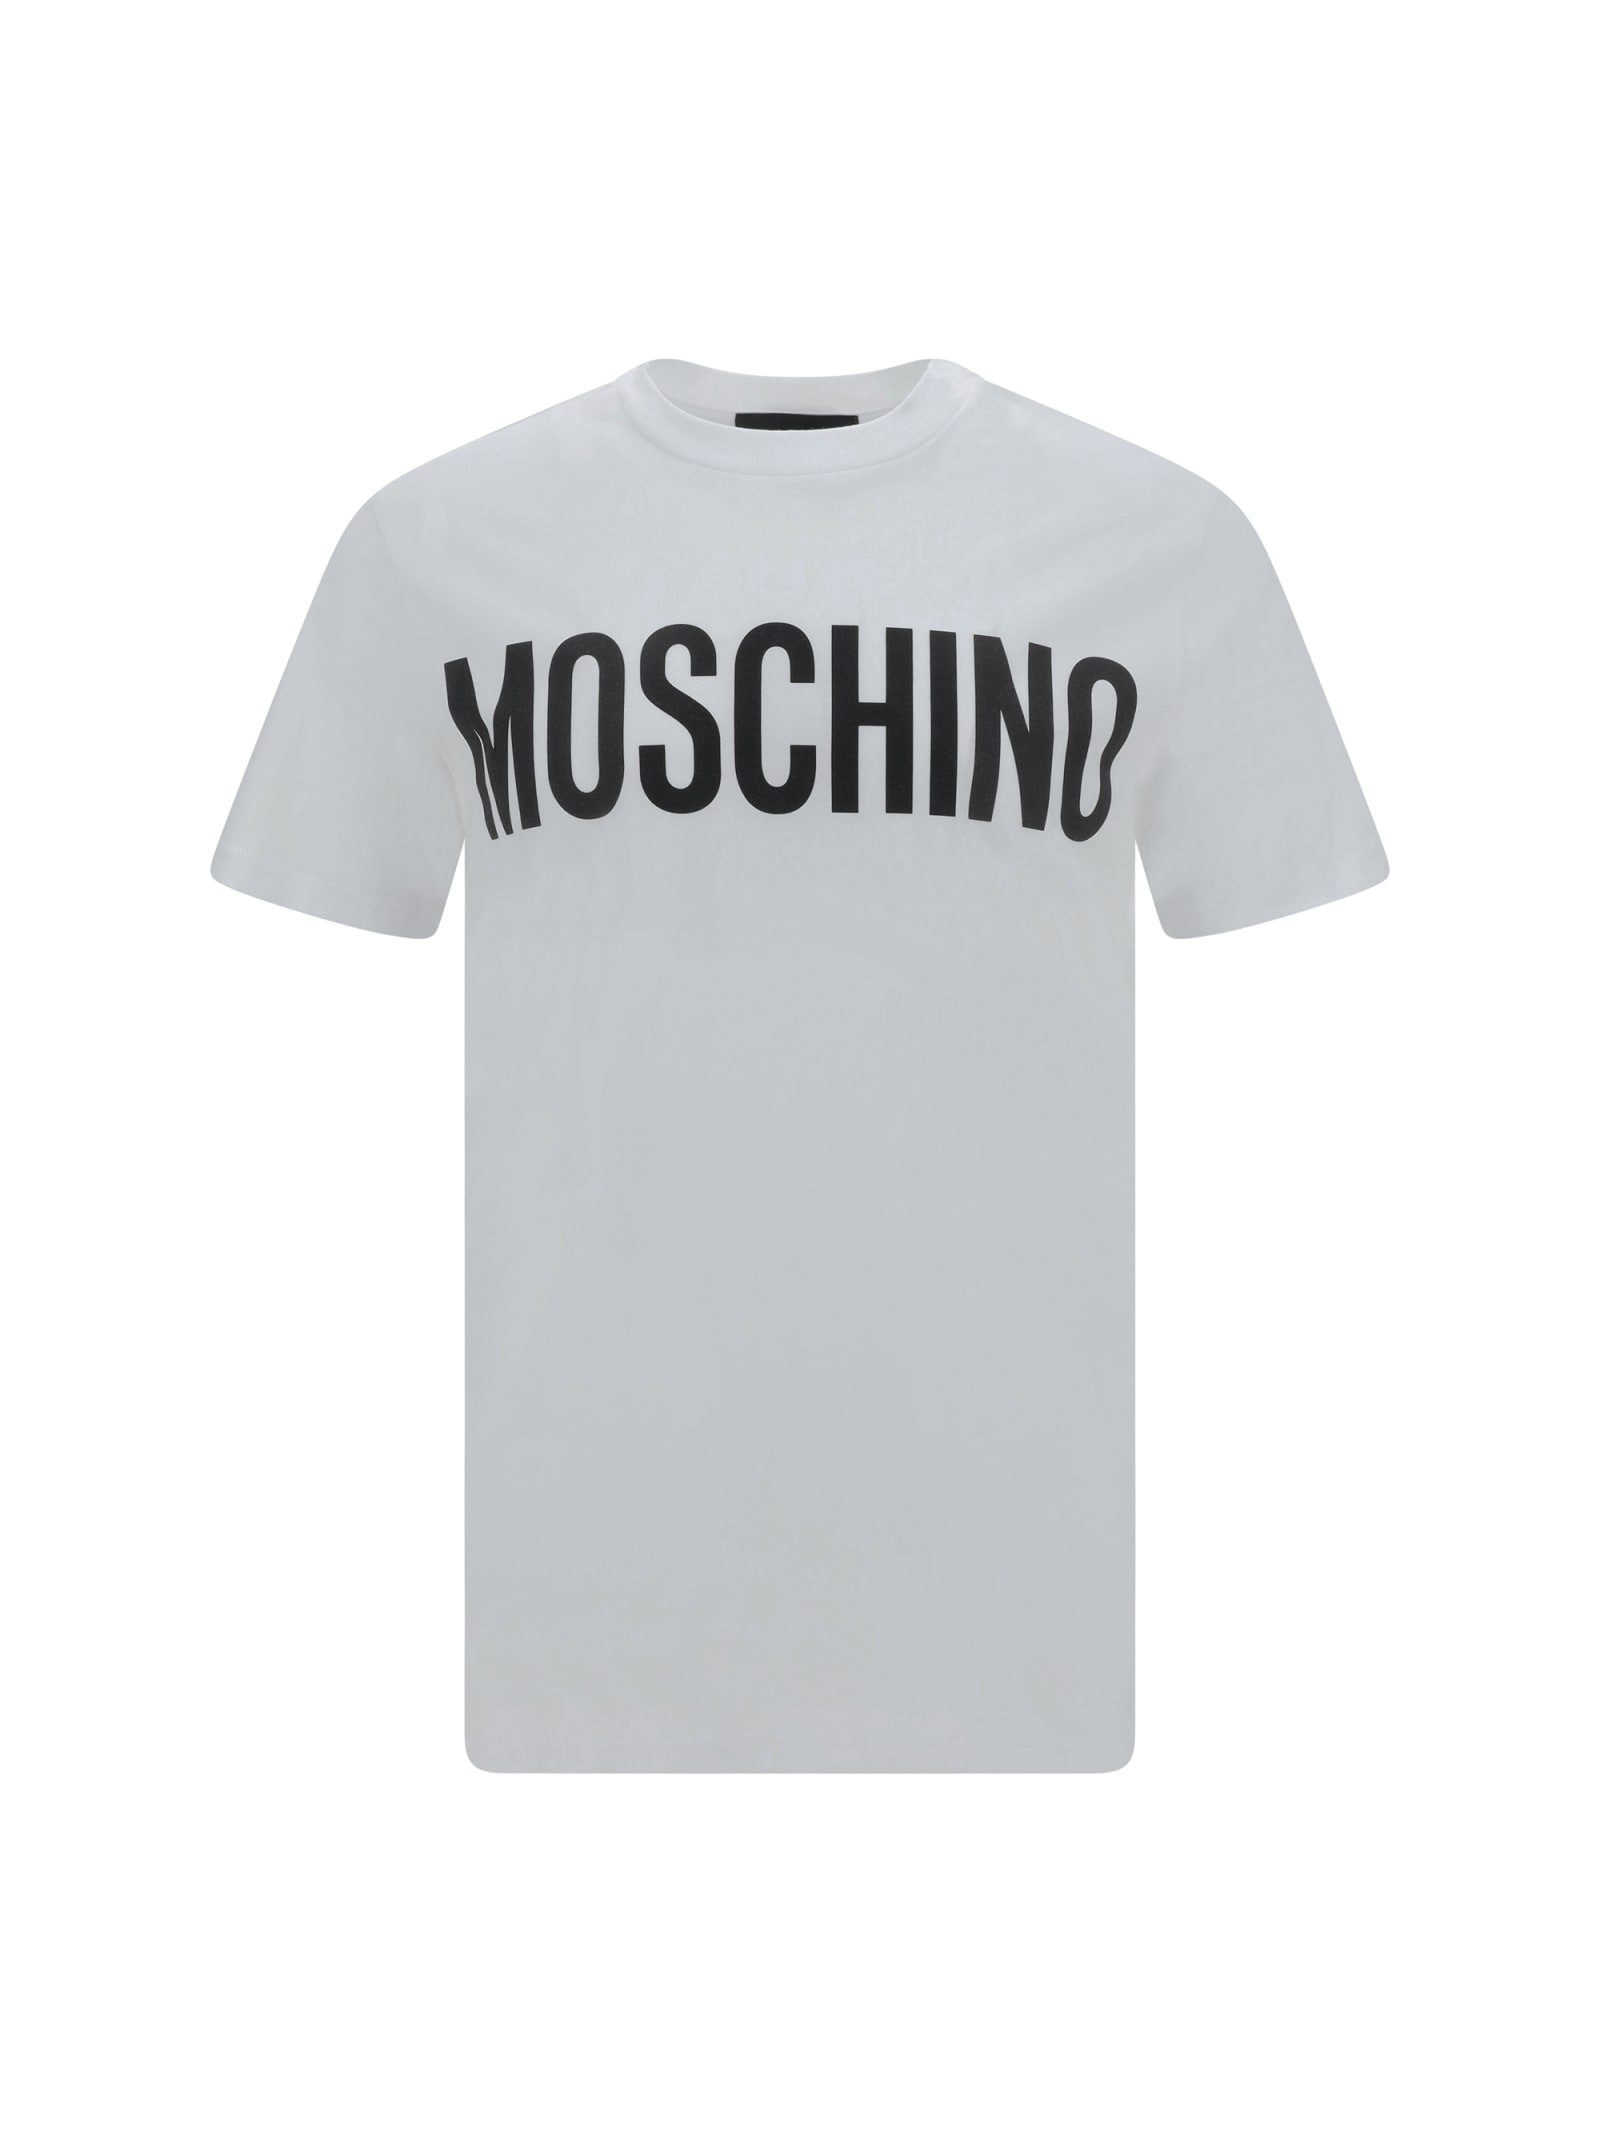 Moschino T-shirt In Multi/white